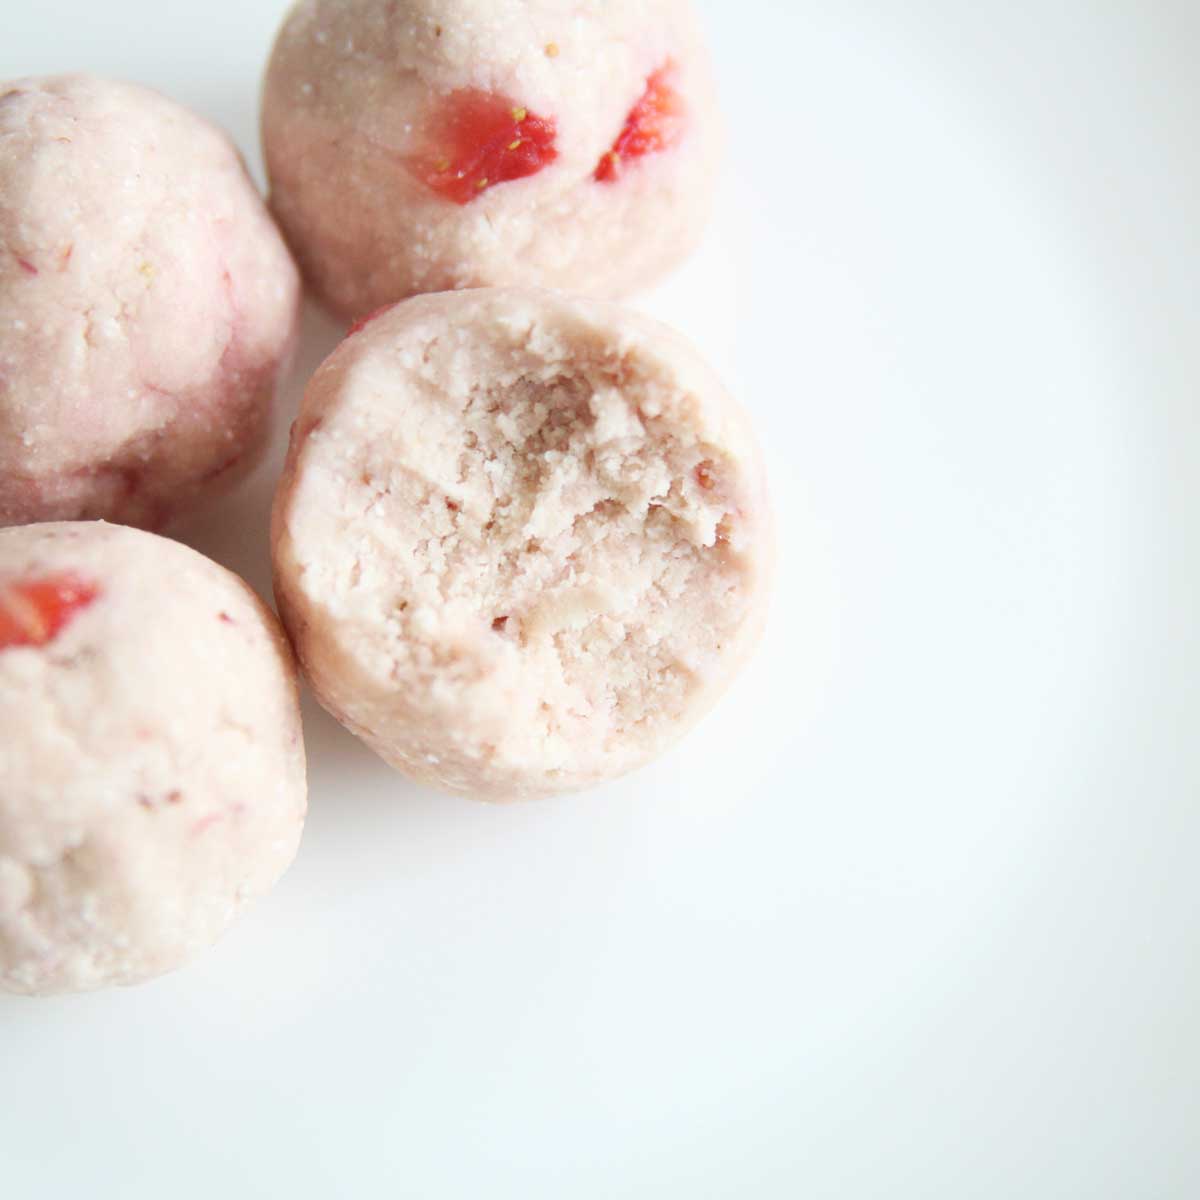 3 Ingredient Strawberry Protein Balls (Healthy, Easy & Vegan) - protein balls